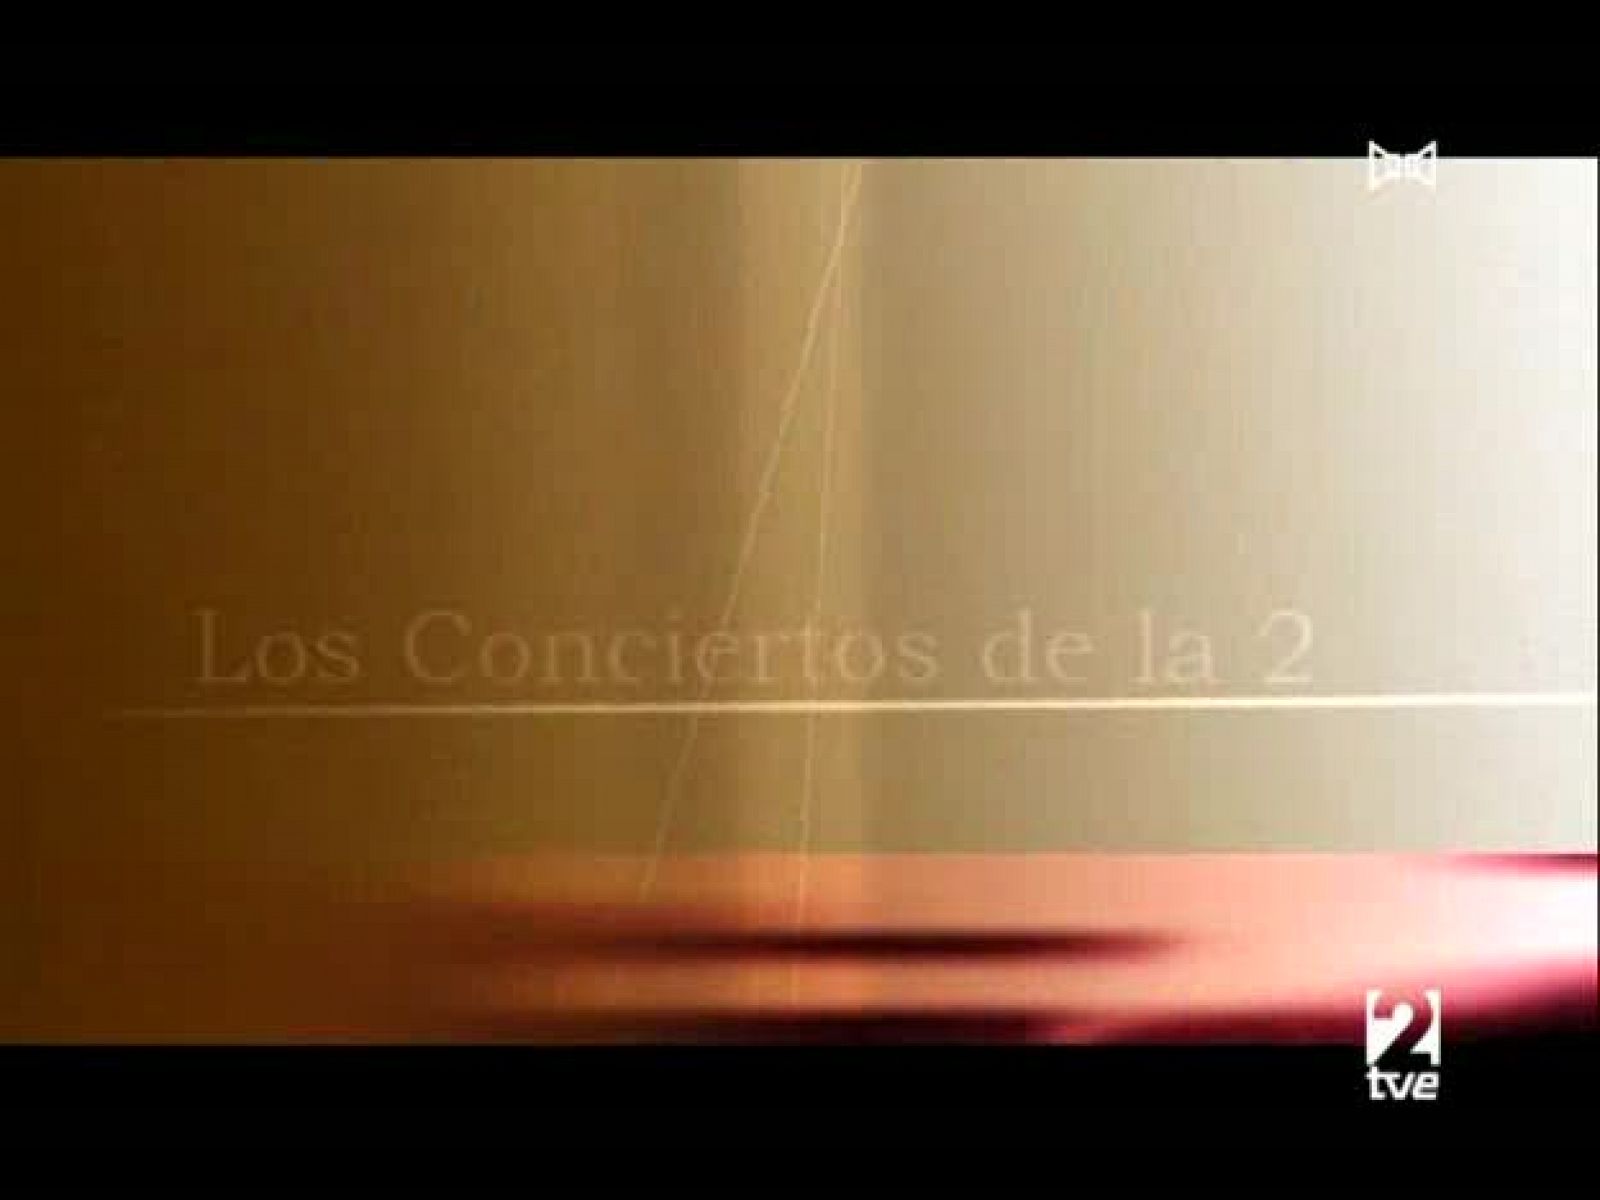 Los conciertos de La 2 - Orquesta Sinfónica de RTVE desde el Monumental